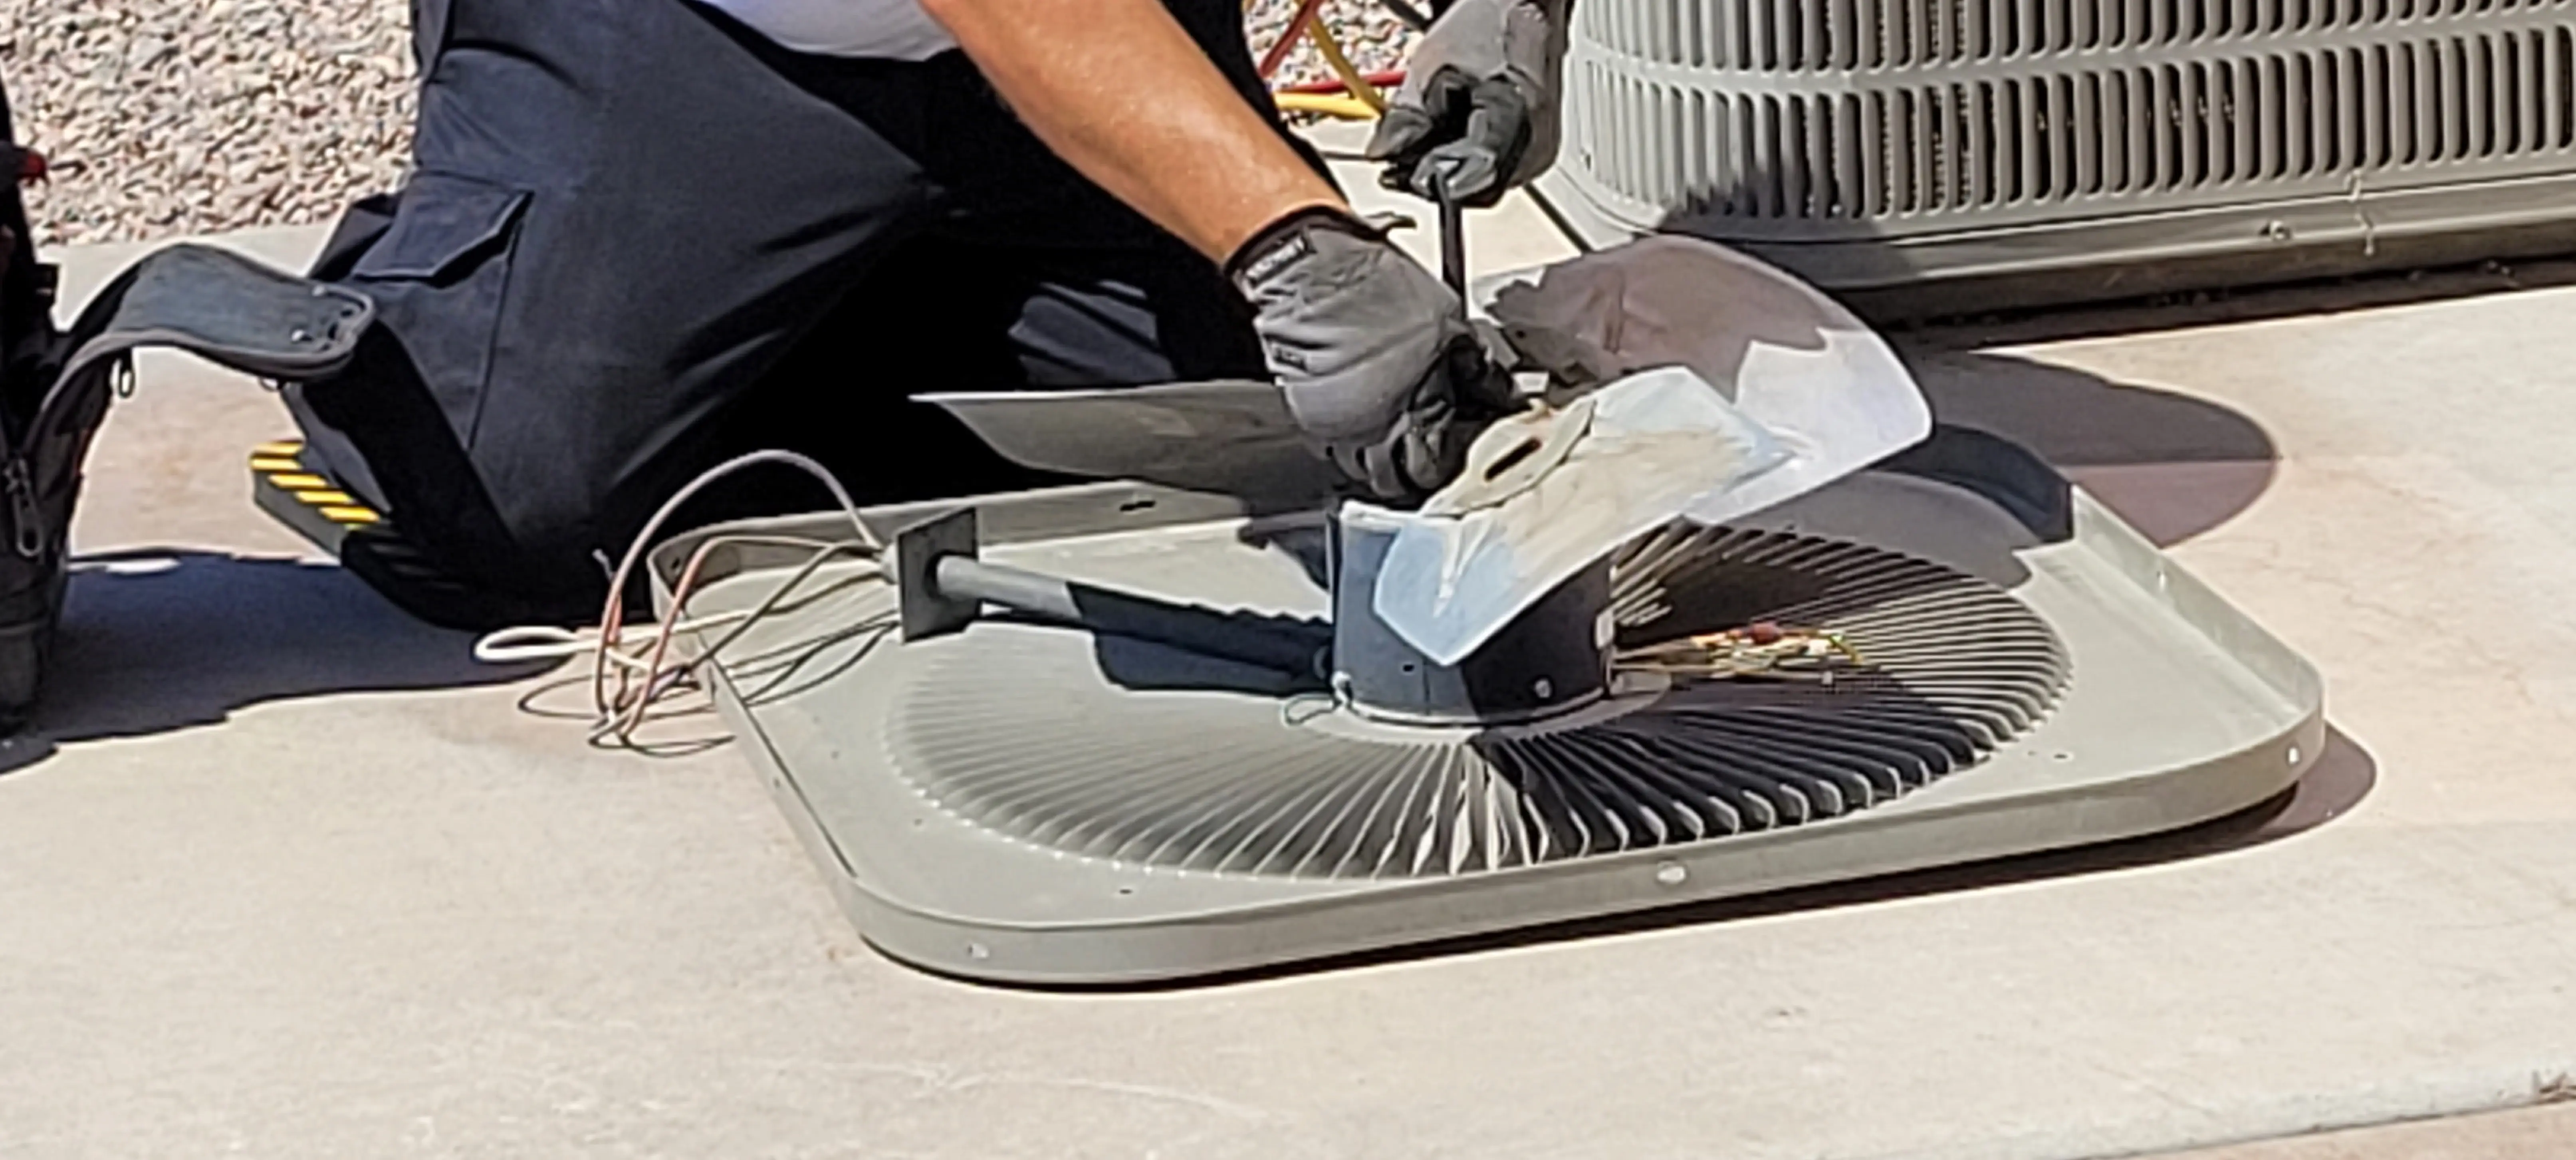 Air-Conditioning-Repair--in-Chandler-Arizona-Air-Conditioning-Repair-5987604-image